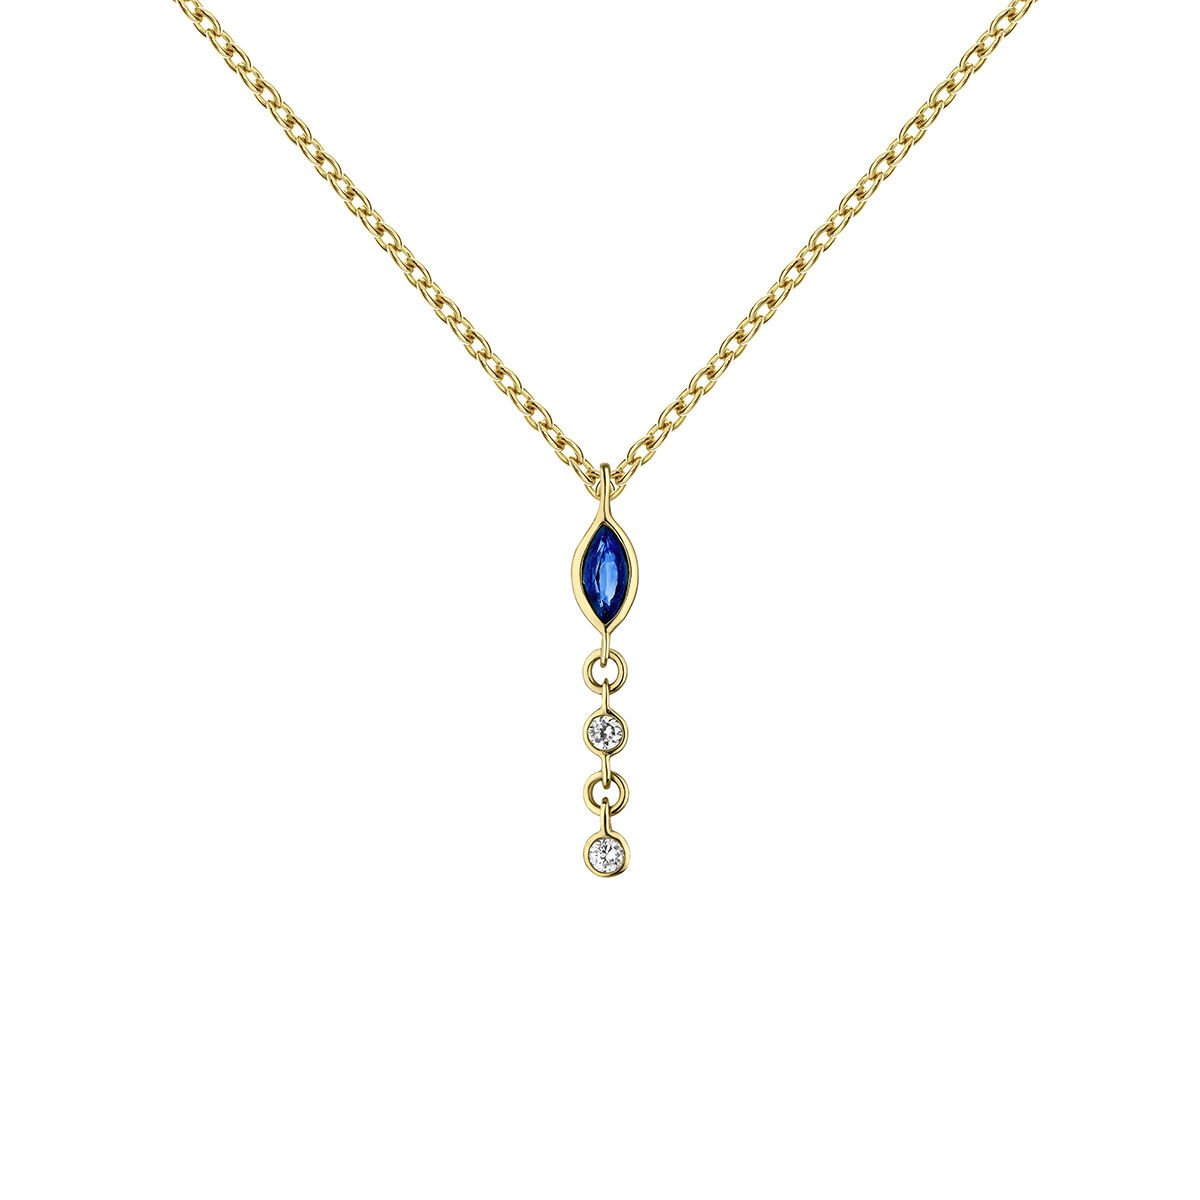 Colgante cadena de oro amarillo de 9kt con diamantes y zafiro azul, J04983-02-BS, hi-res